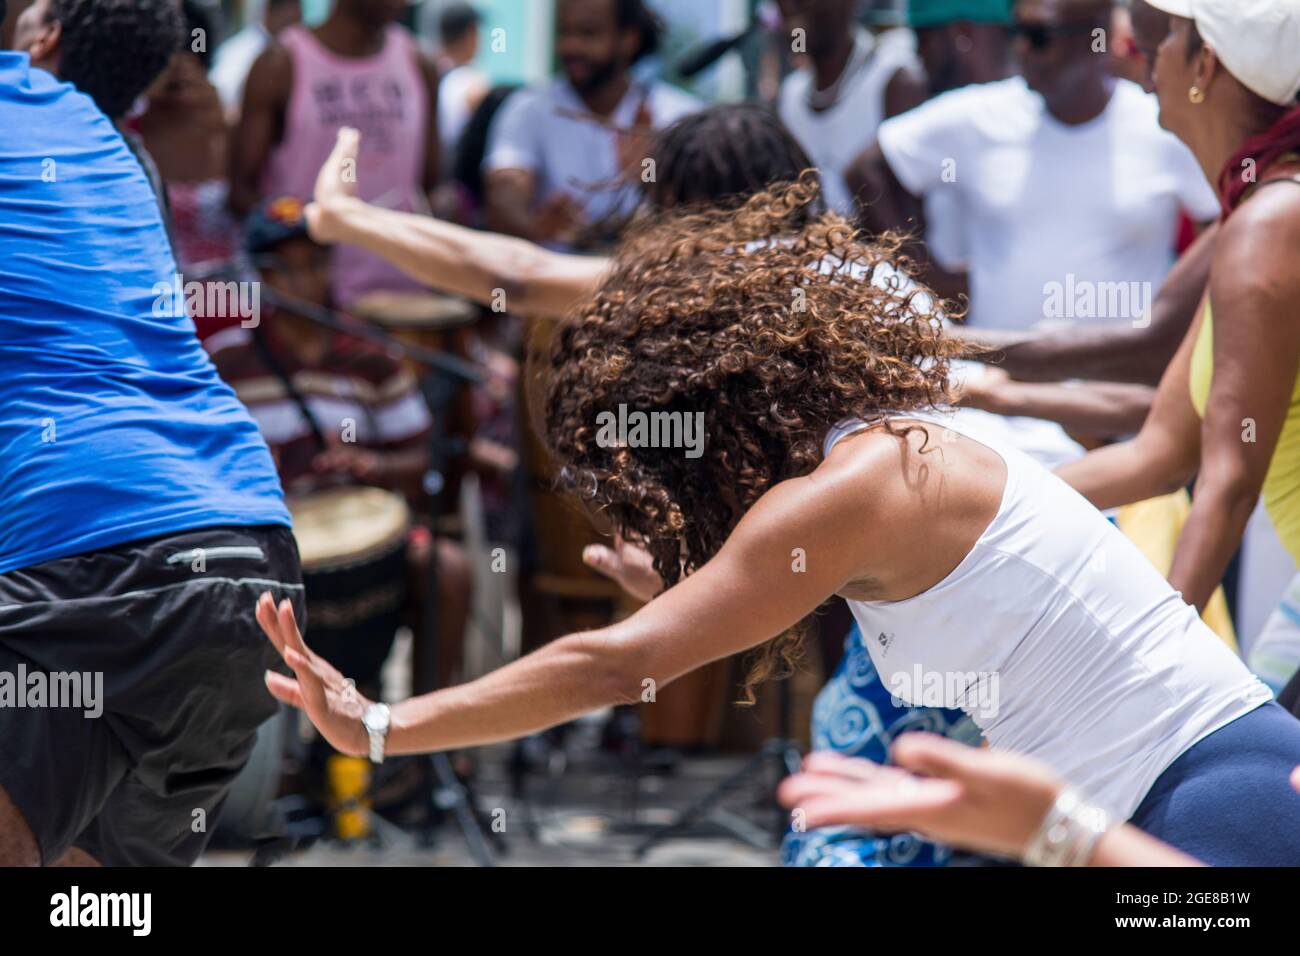 Salvador, Bahia, Brasile - 31 dicembre 2015: Gruppo di ballerini che ballano nella piazza esterna della città. Foto Stock